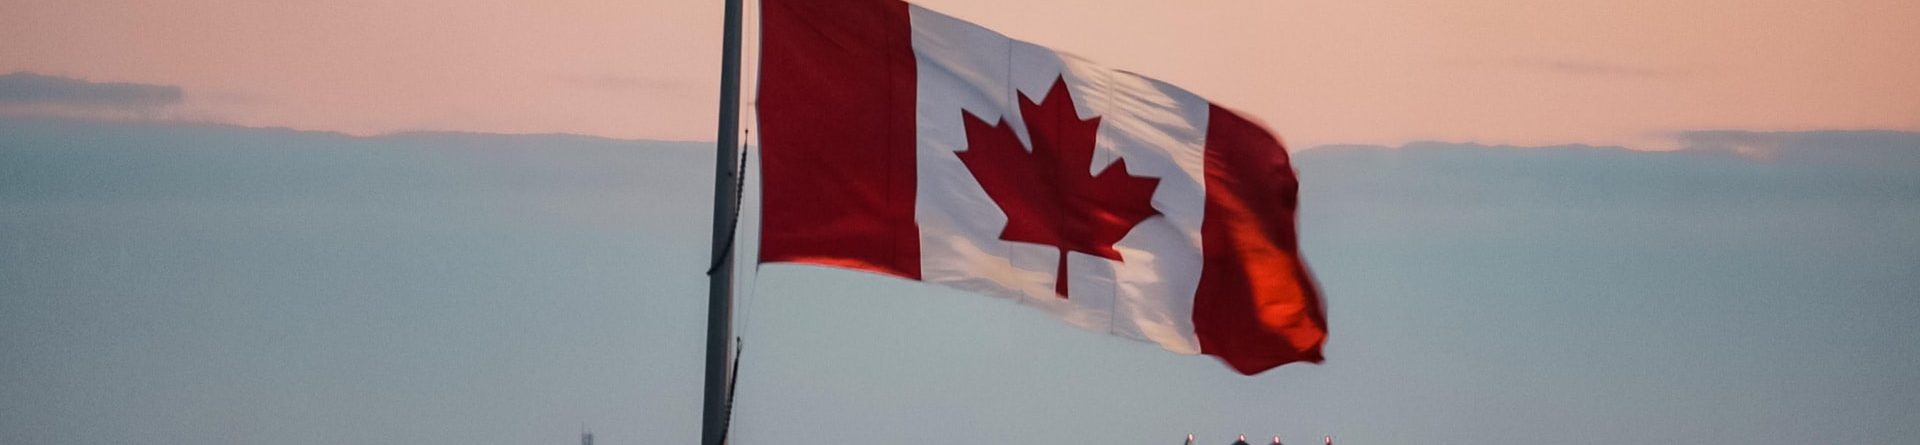 Семинар «Иммиграция в Канаду через обучение», Днепр 6 июля 2021 г.